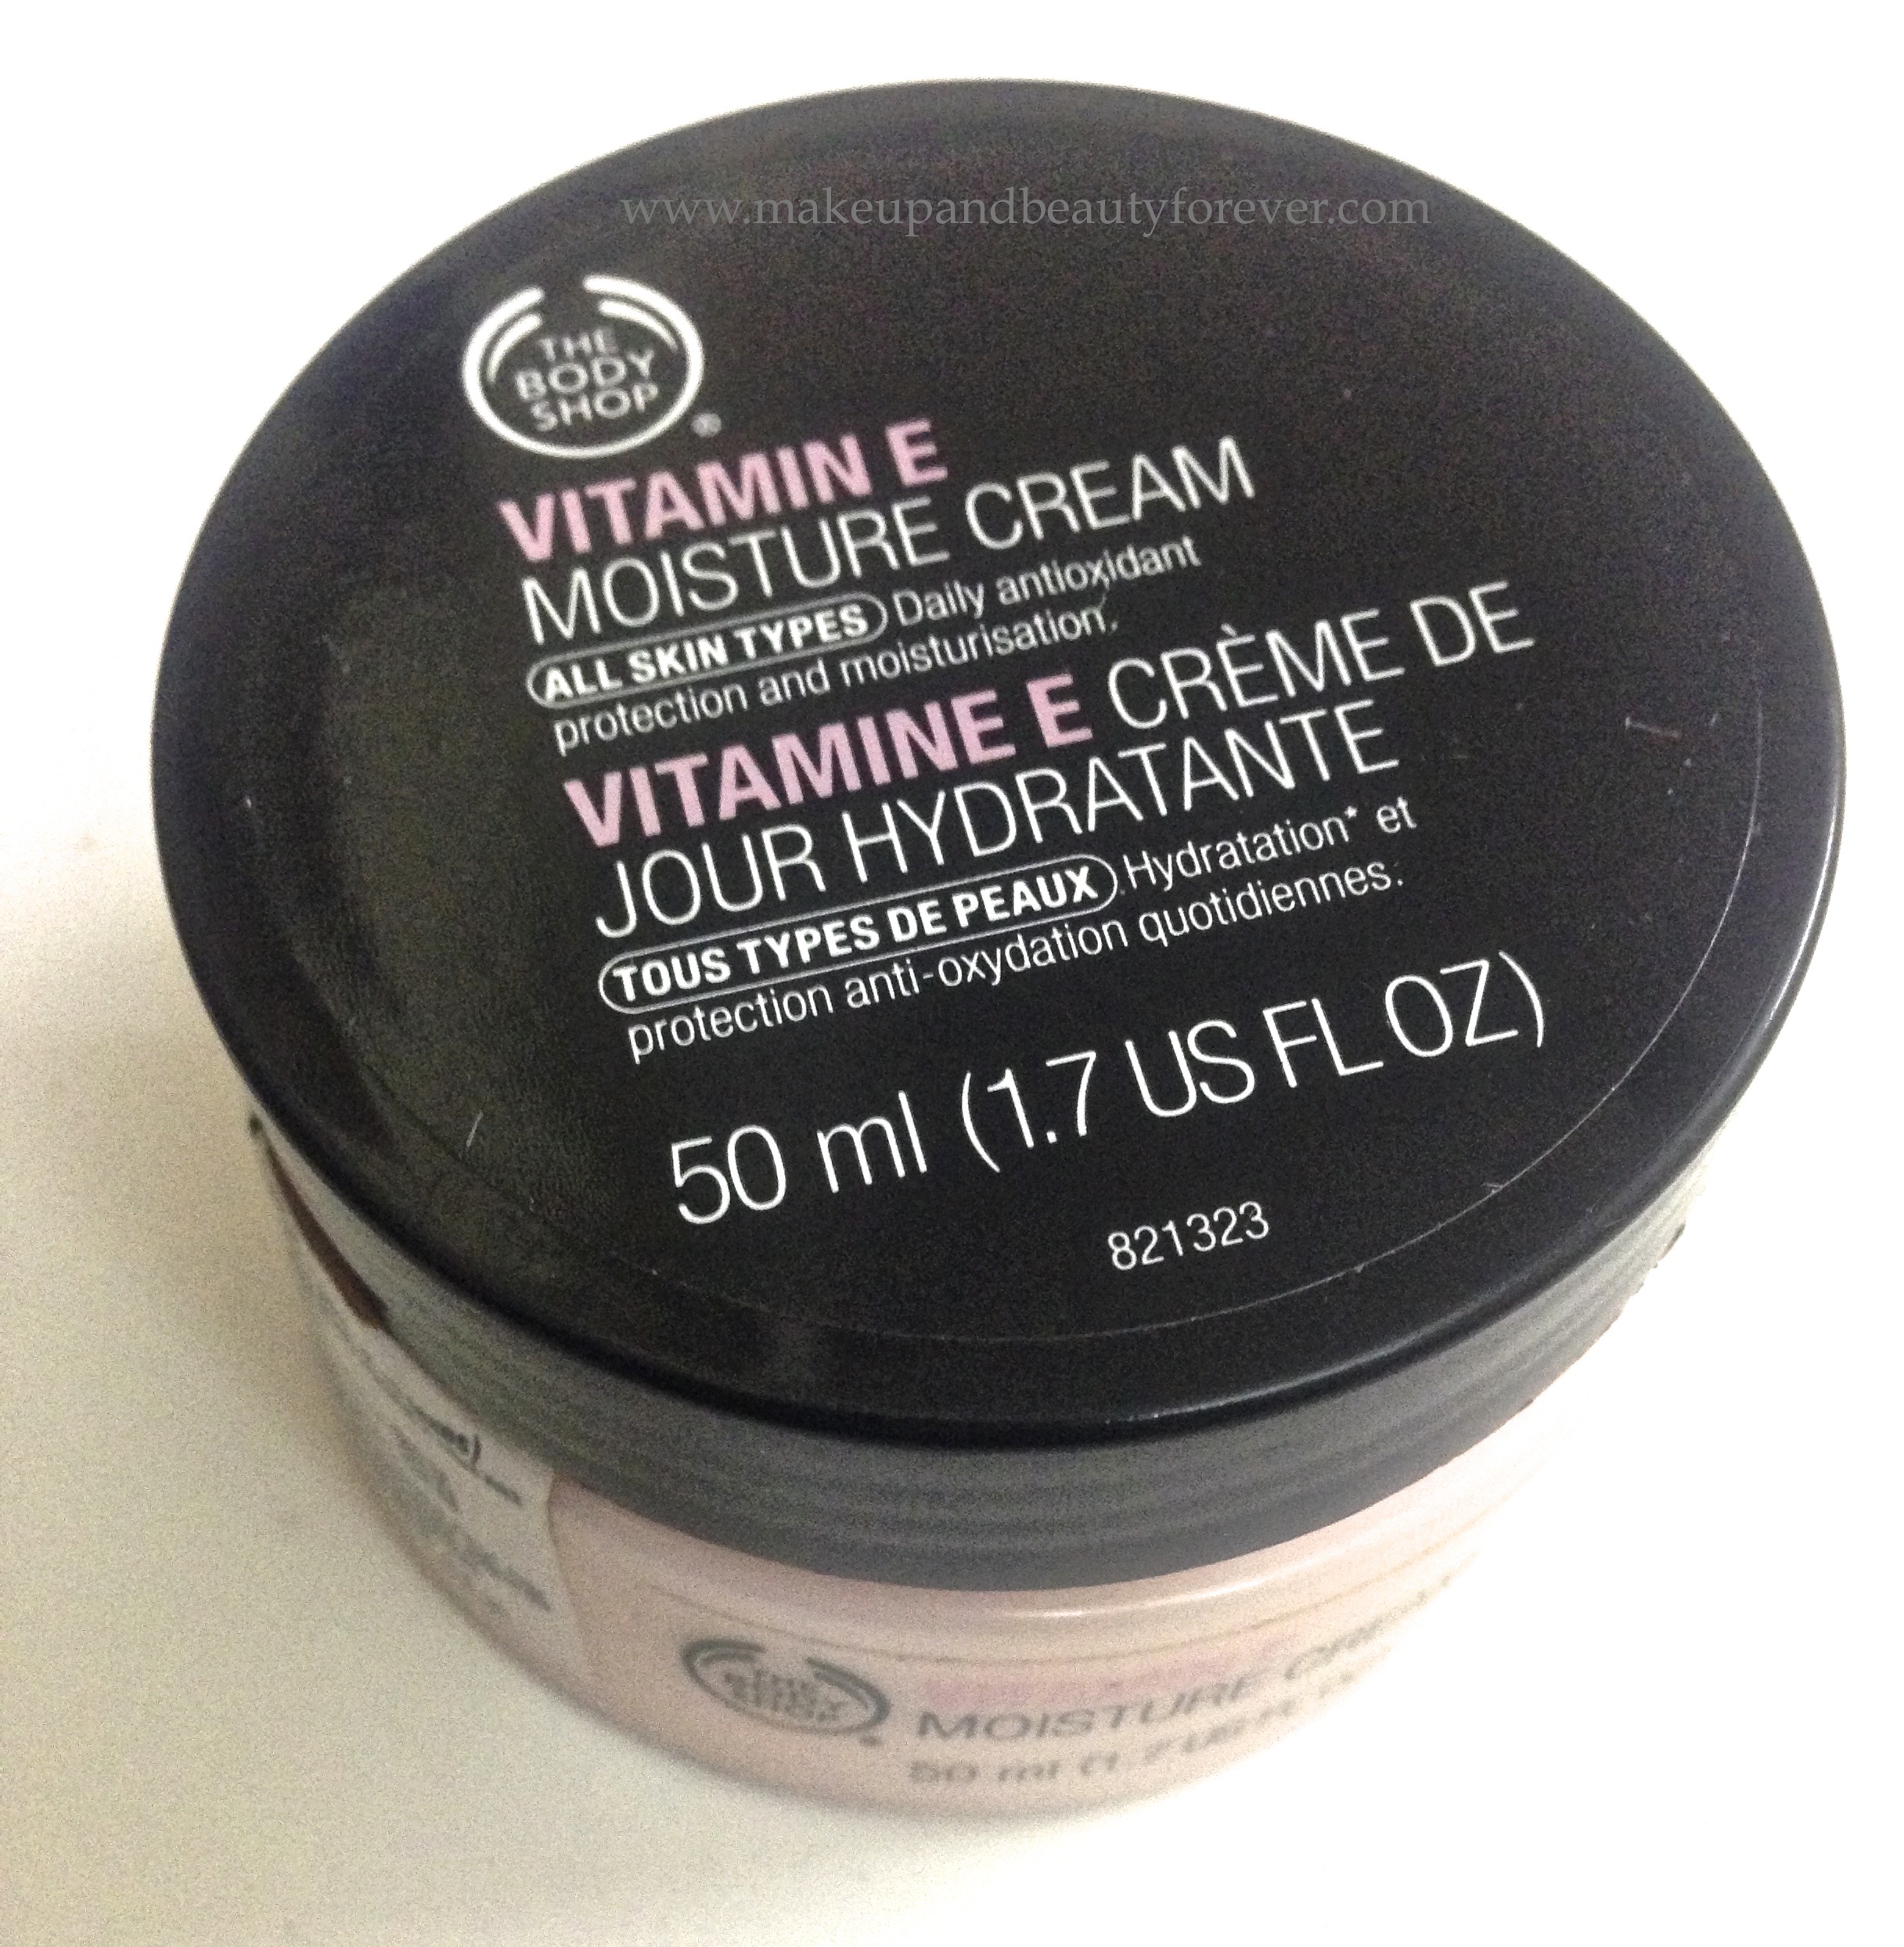 The Body Shop Vitamin E Moisture Cream Review